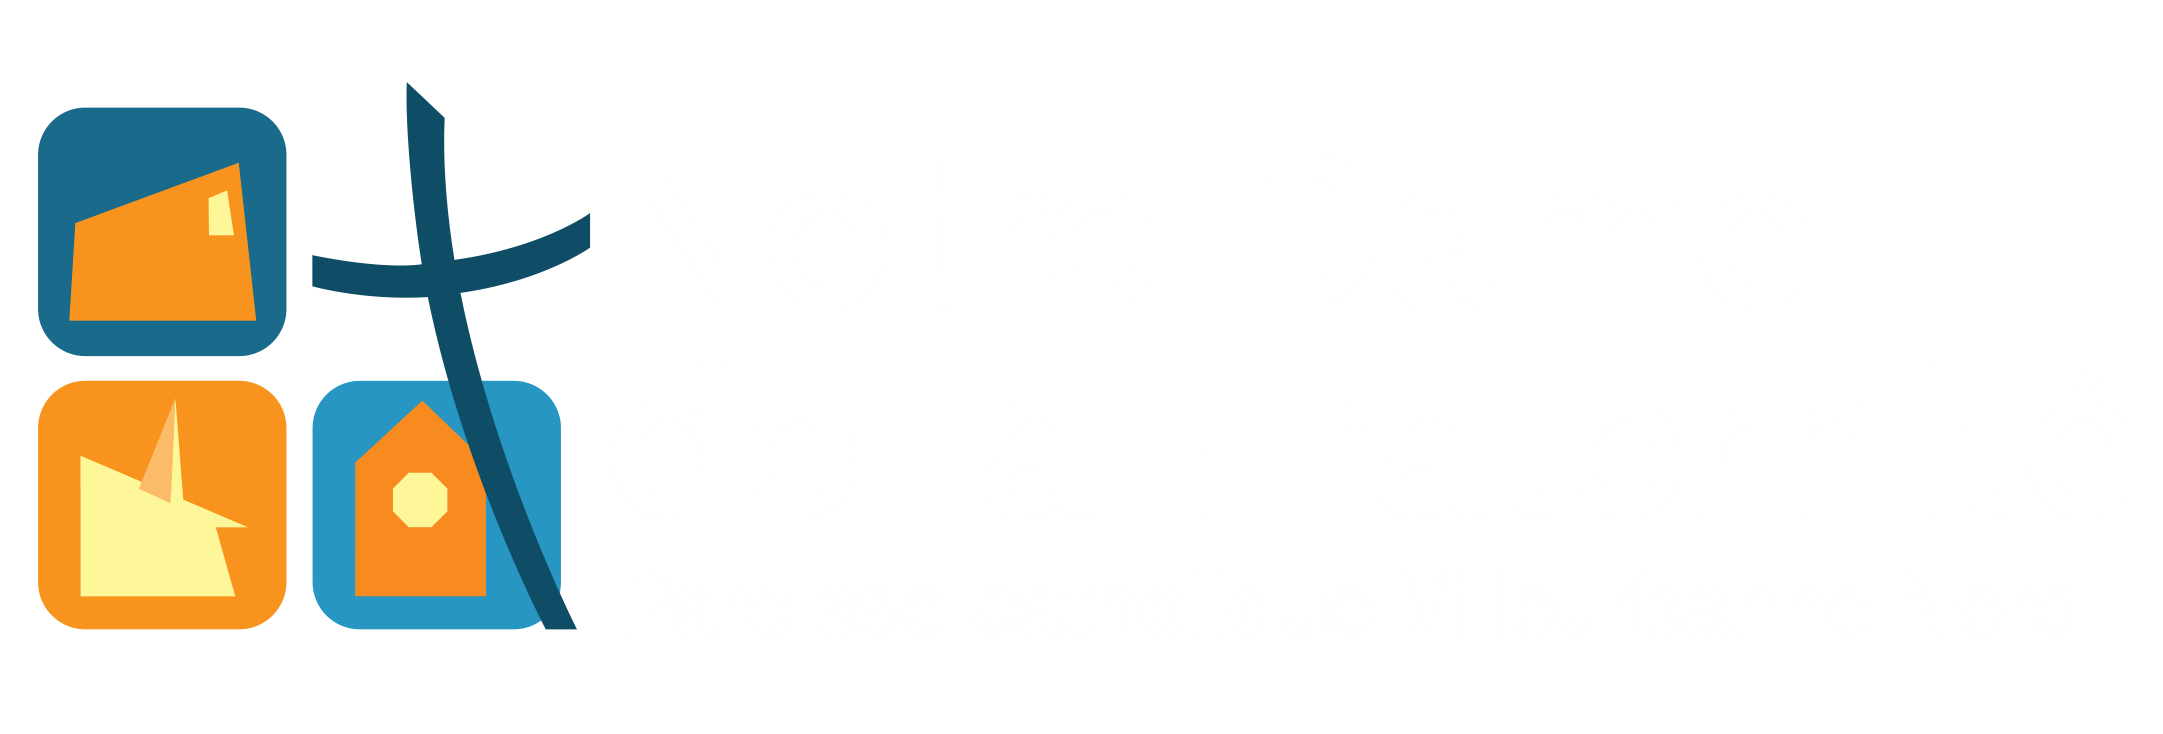 Site d'informations de la paroisse Notre Dame de la Fraternité à Villeurbanne.